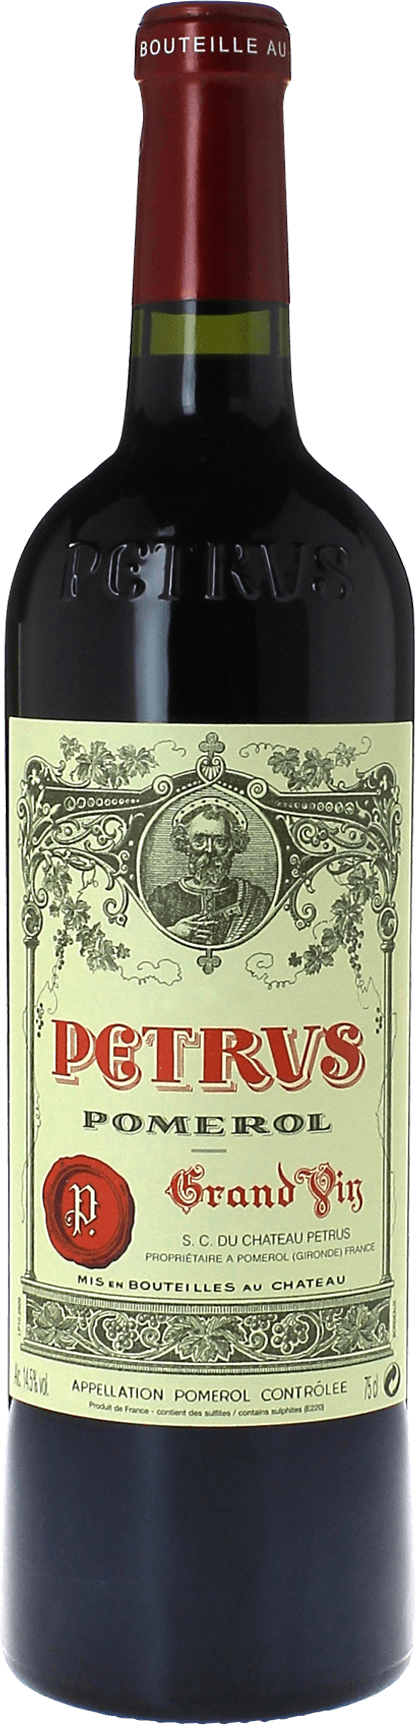 Petrus 1994  Pomerol, Bordeaux rouge